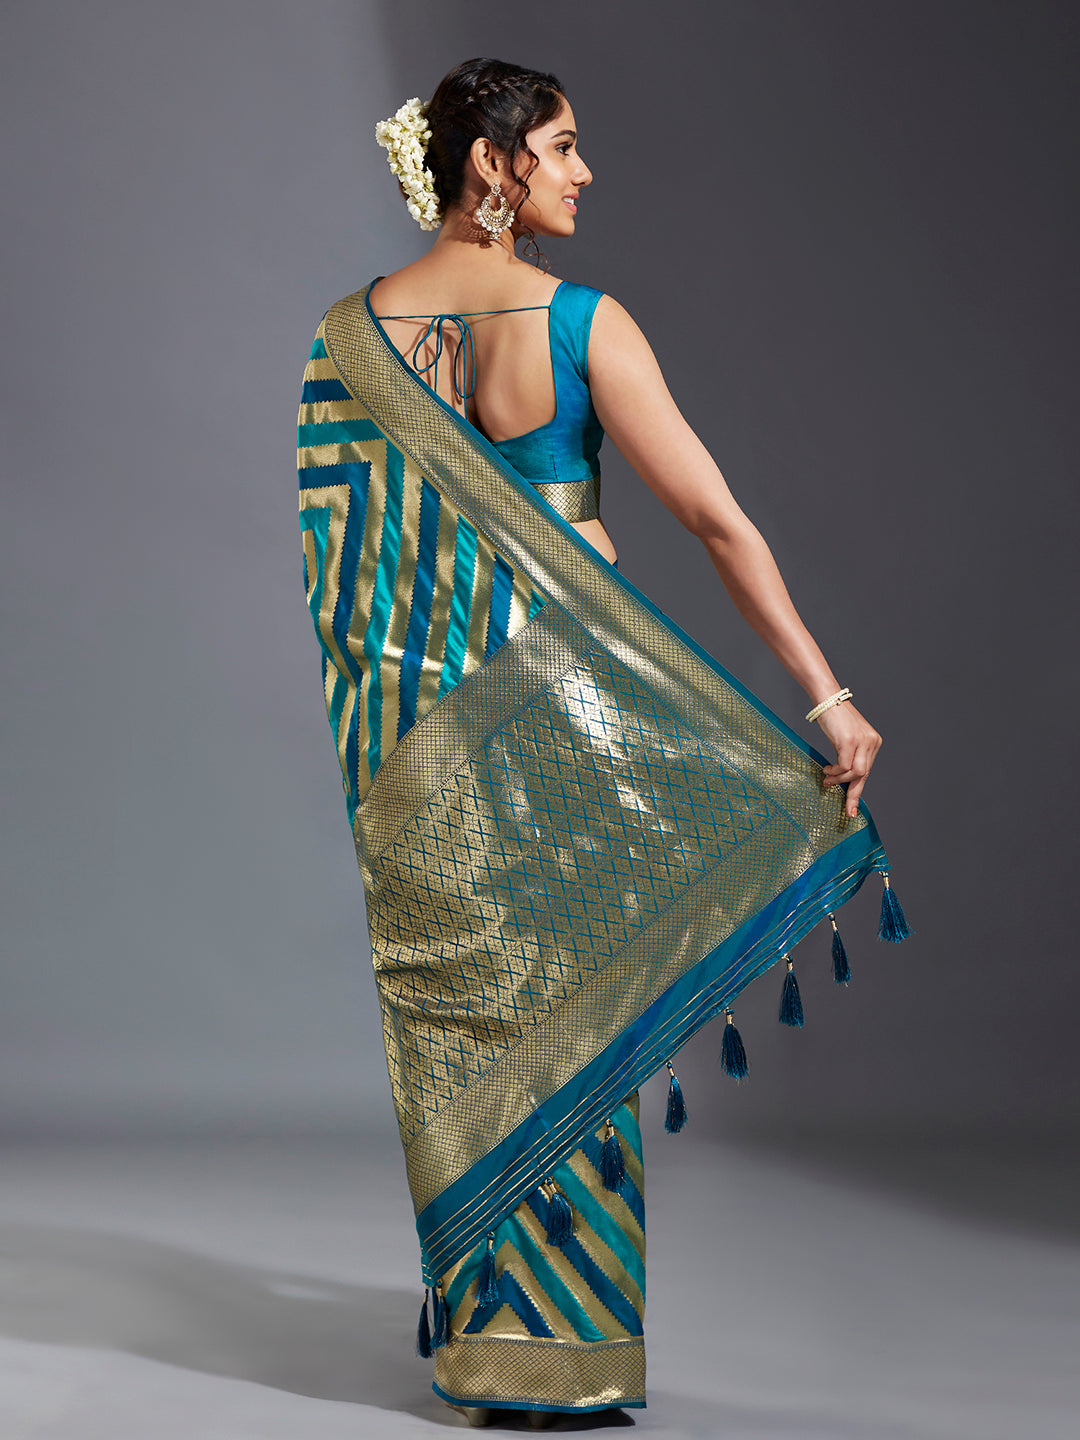 Women's Teal & Gold Satin Paisley Zari With Beautiful Leriya Banarasi Saree - Royal Dwells